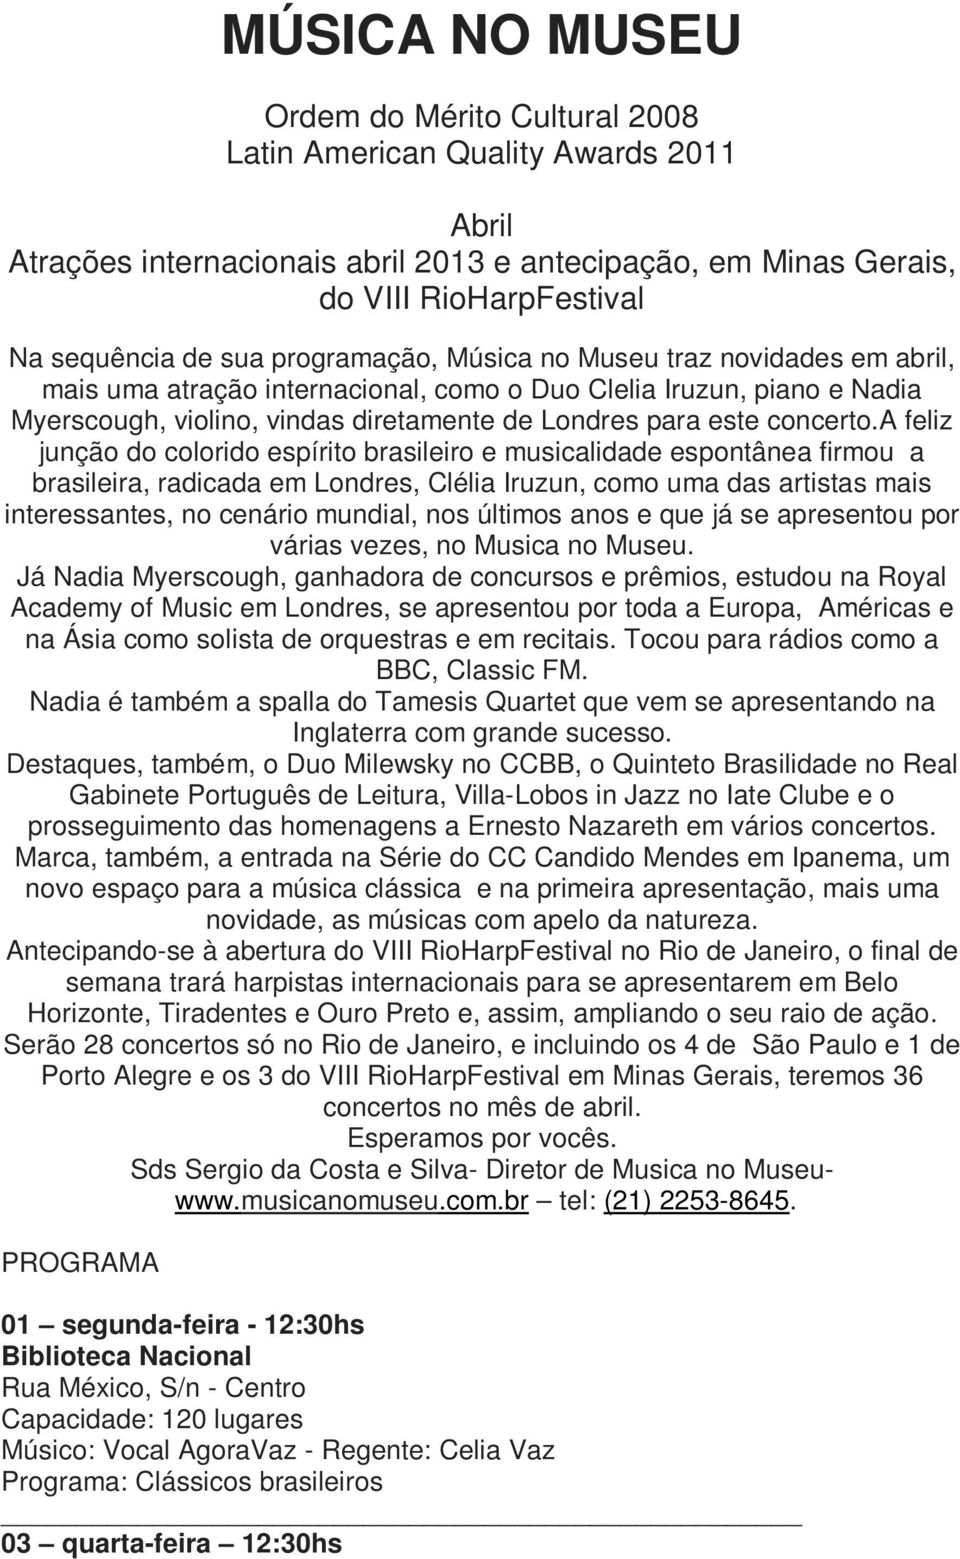 a feliz junção do colorido espírito brasileiro e musicalidade espontânea firmou a brasileira, radicada em Londres, Clélia Iruzun, como uma das artistas mais interessantes, no cenário mundial, nos